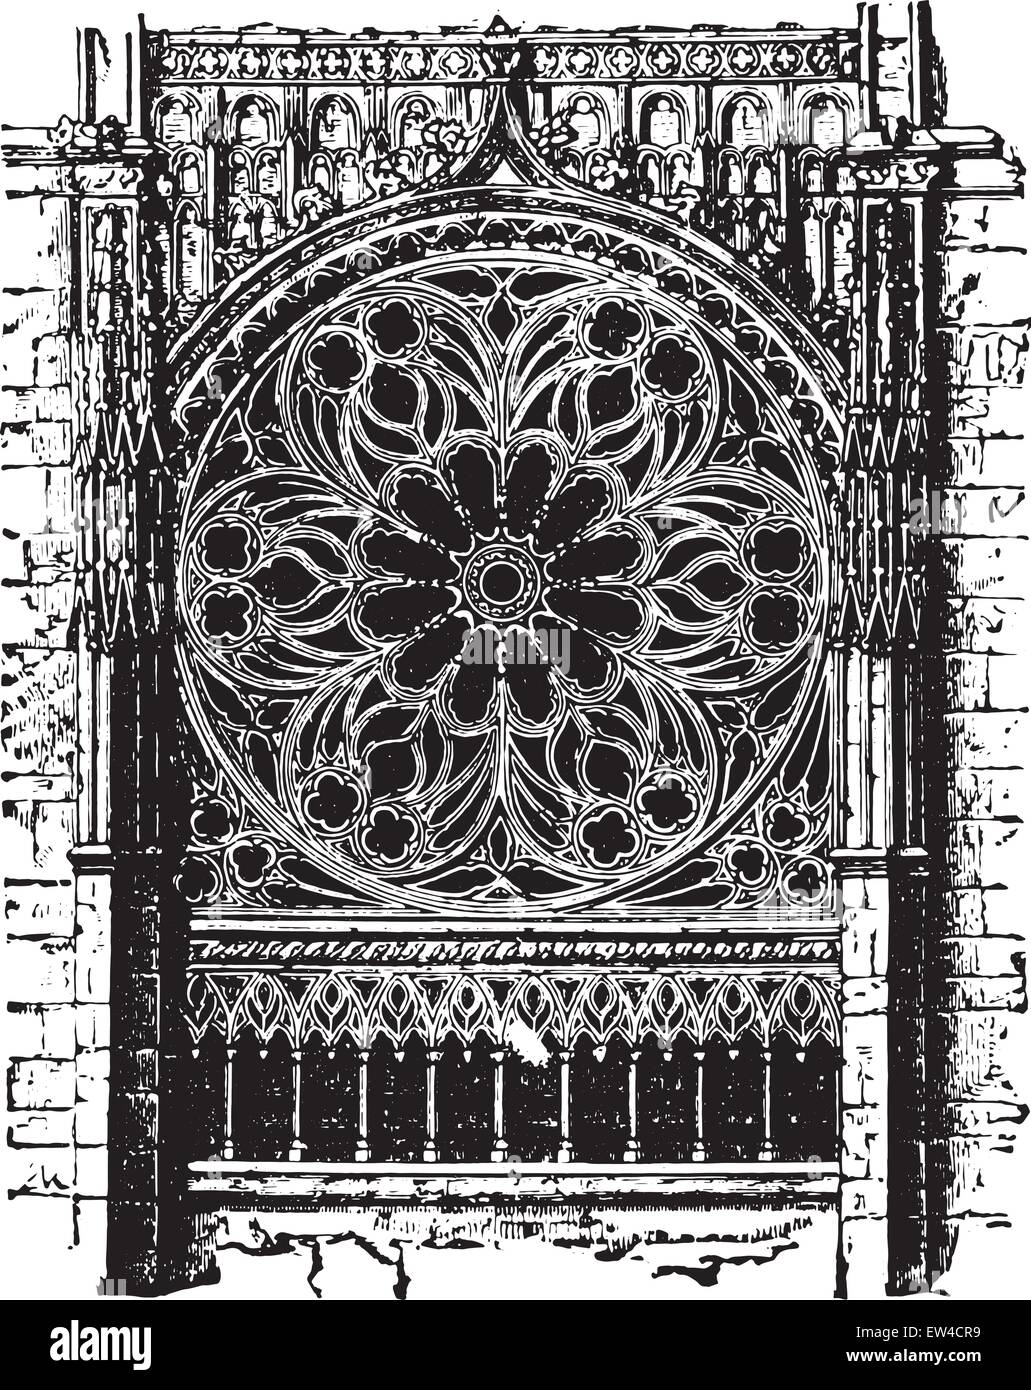 Rose von der Kathedrale von Rouen, der vierzehnten Jahrhundert, Vintage eingravierten Abbildung. Industrielle Enzyklopädie E.-O. Lami - 1875. Stock Vektor